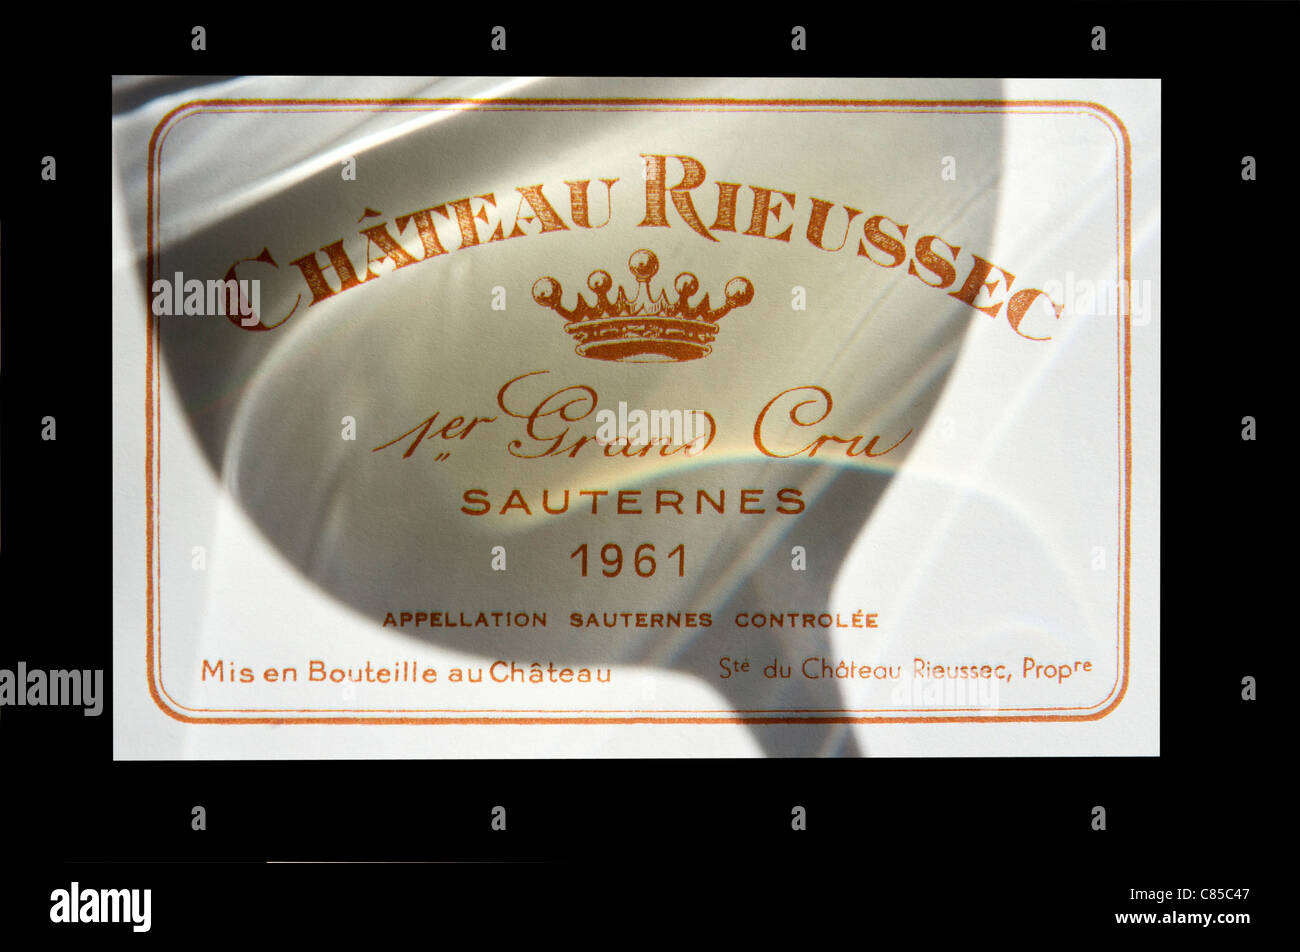 Chateau Rieussec 1961 ombra di un bicchiere di degustazione di vino che cade sull'etichetta del raffinato Chateau Rieussec Sauternes Grand Cru francese Semillon vino bianco concetto Foto Stock